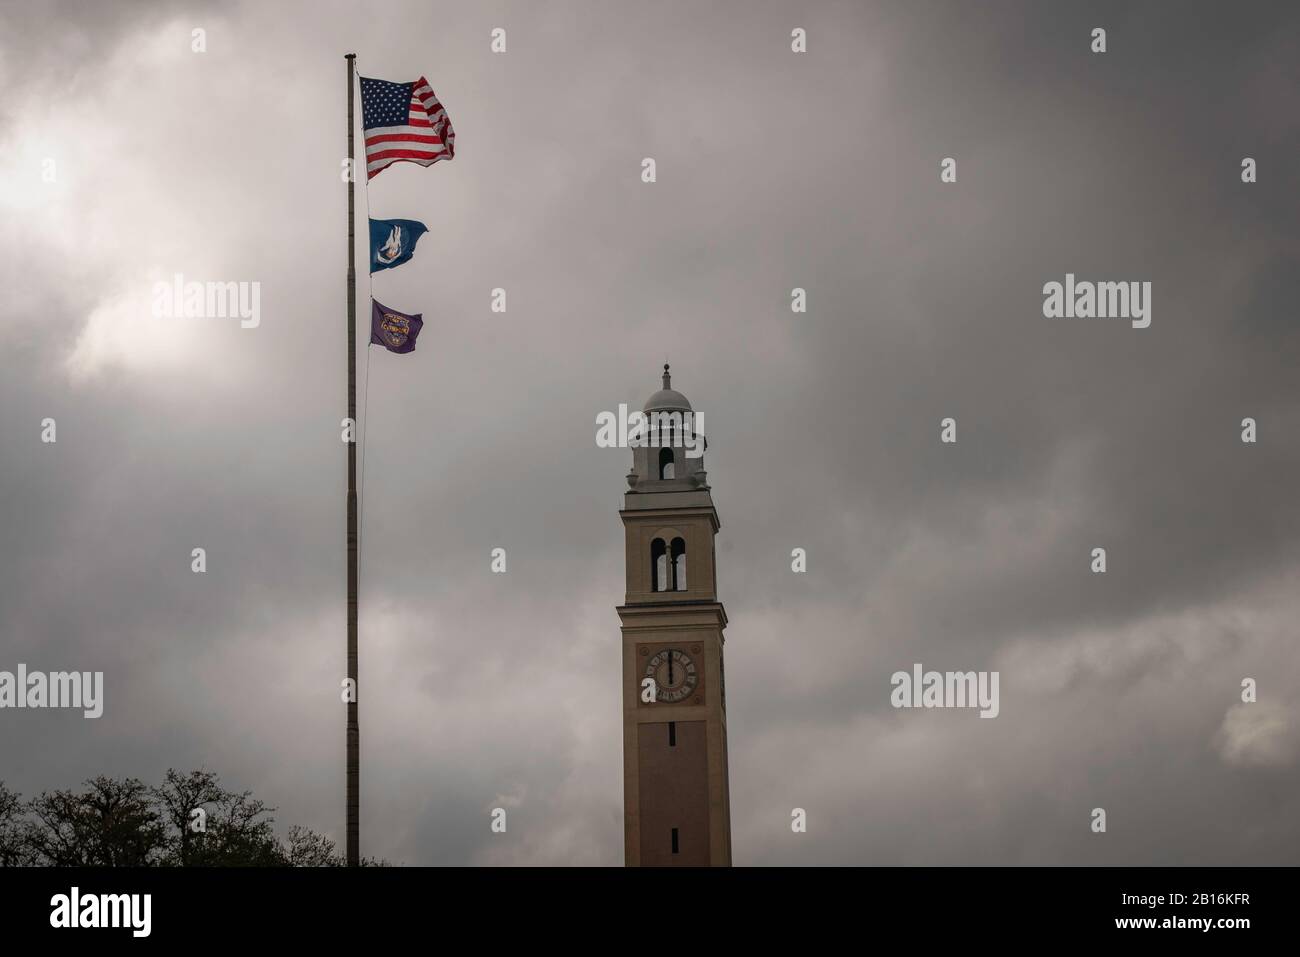 Baton Rouge, Louisiana - 10 febbraio 2020: Bandiere della Louisiana state University (LSU) nel campus Foto Stock